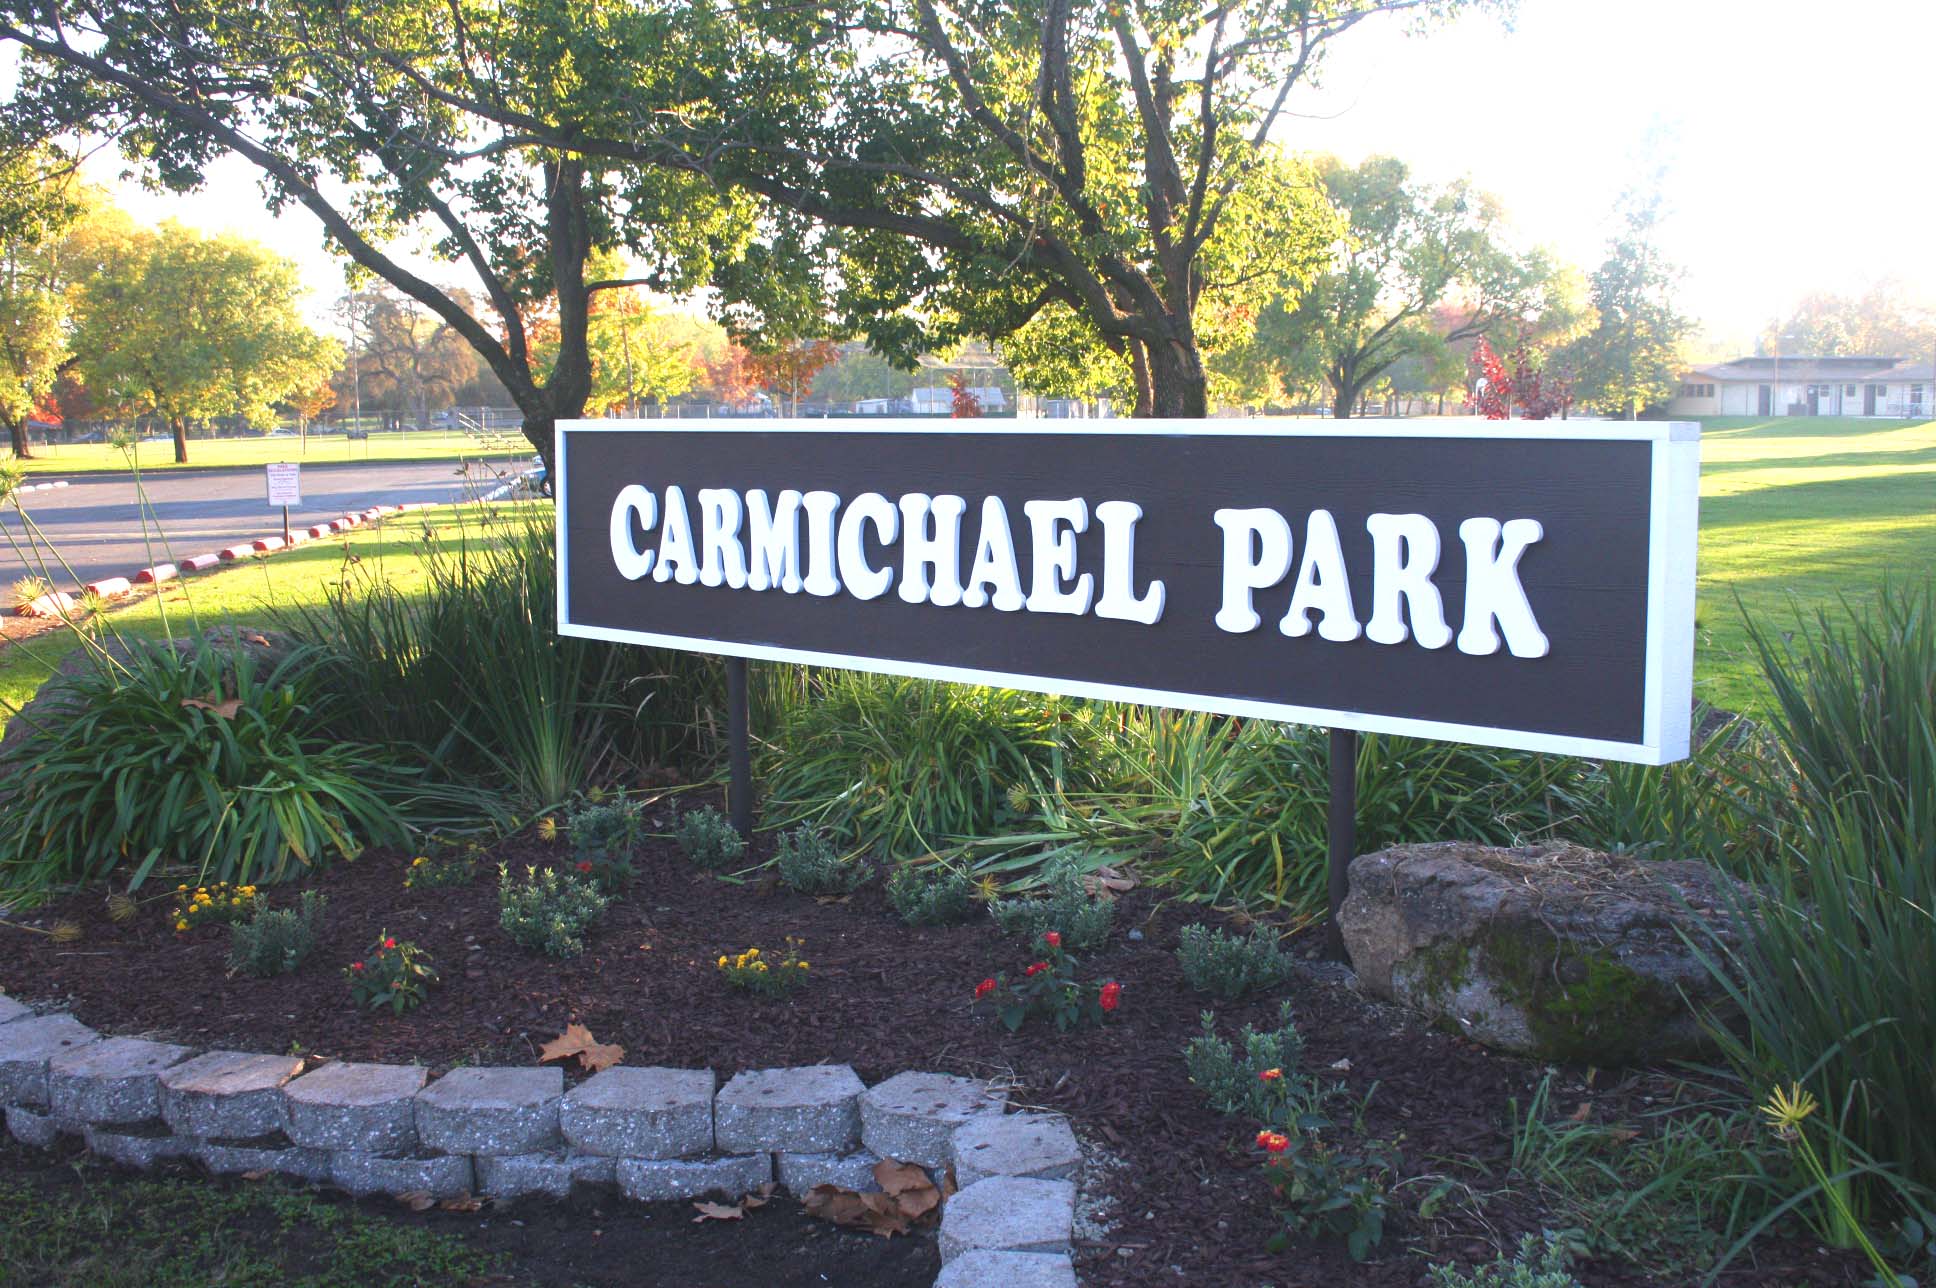 Carmichael Park